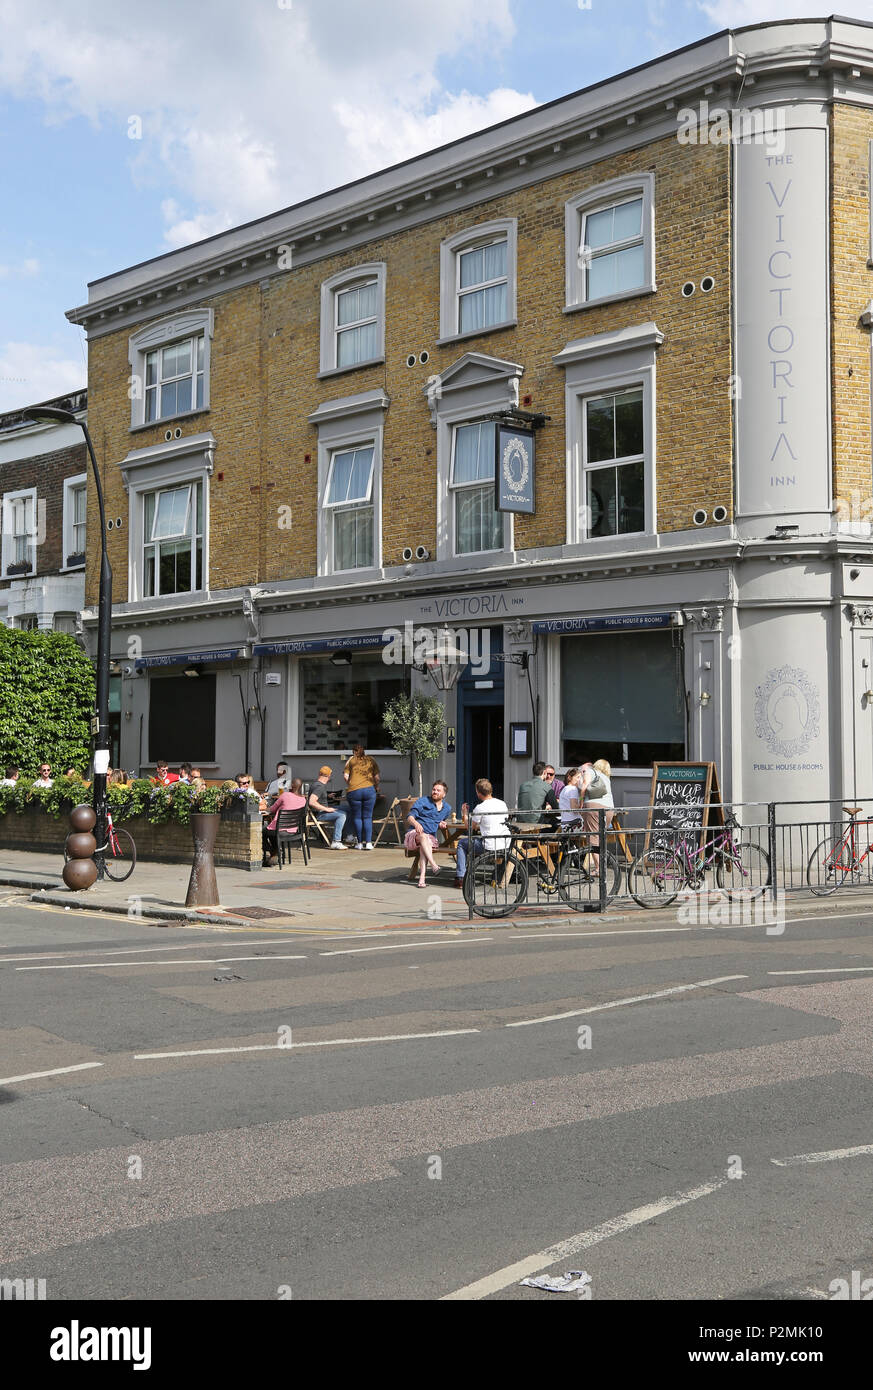 Le Victoria Inn sur Peckham's Bellenden Road, Londres. Il est indiqué sur une soirée d'été avec les clients assis dehors le soleil brille. Banque D'Images